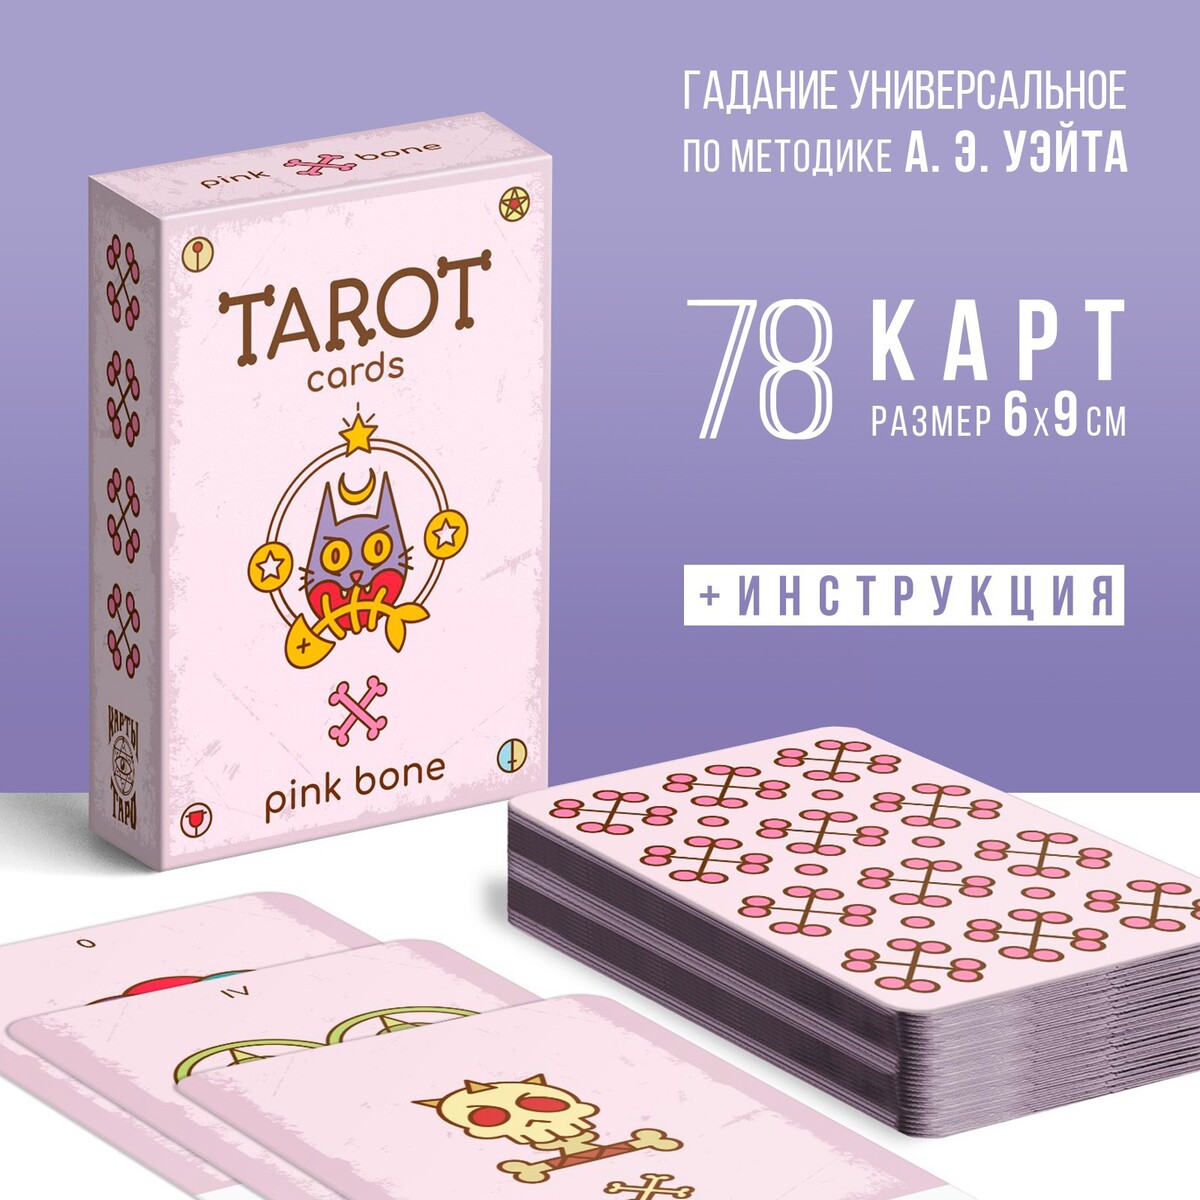 Таро таро pink bone 78 карт 6х9 см 16